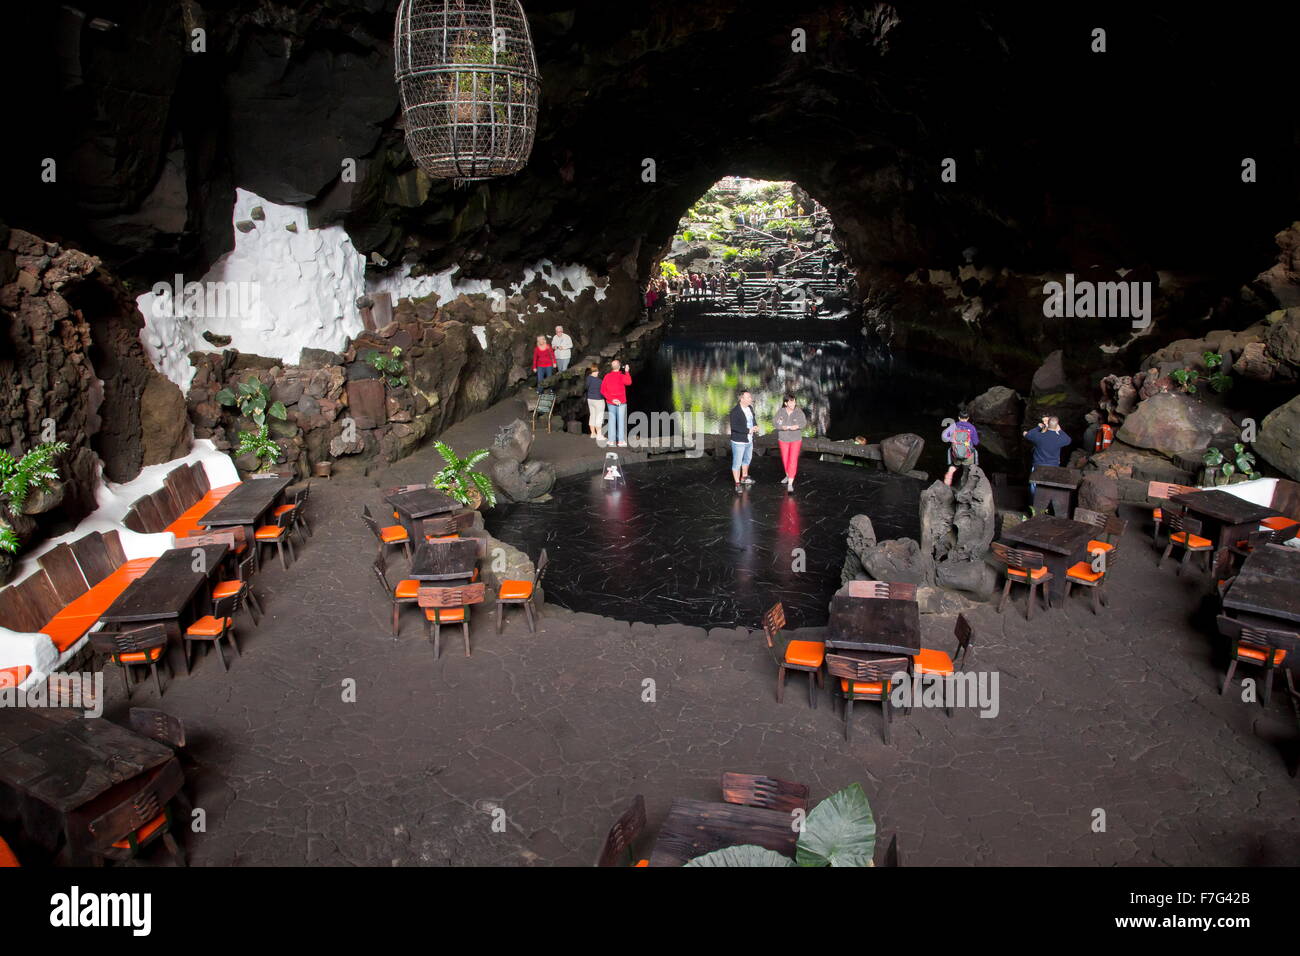 Jameos del Agua, cafe and lava tunnel, Lanzarote. Stock Photo